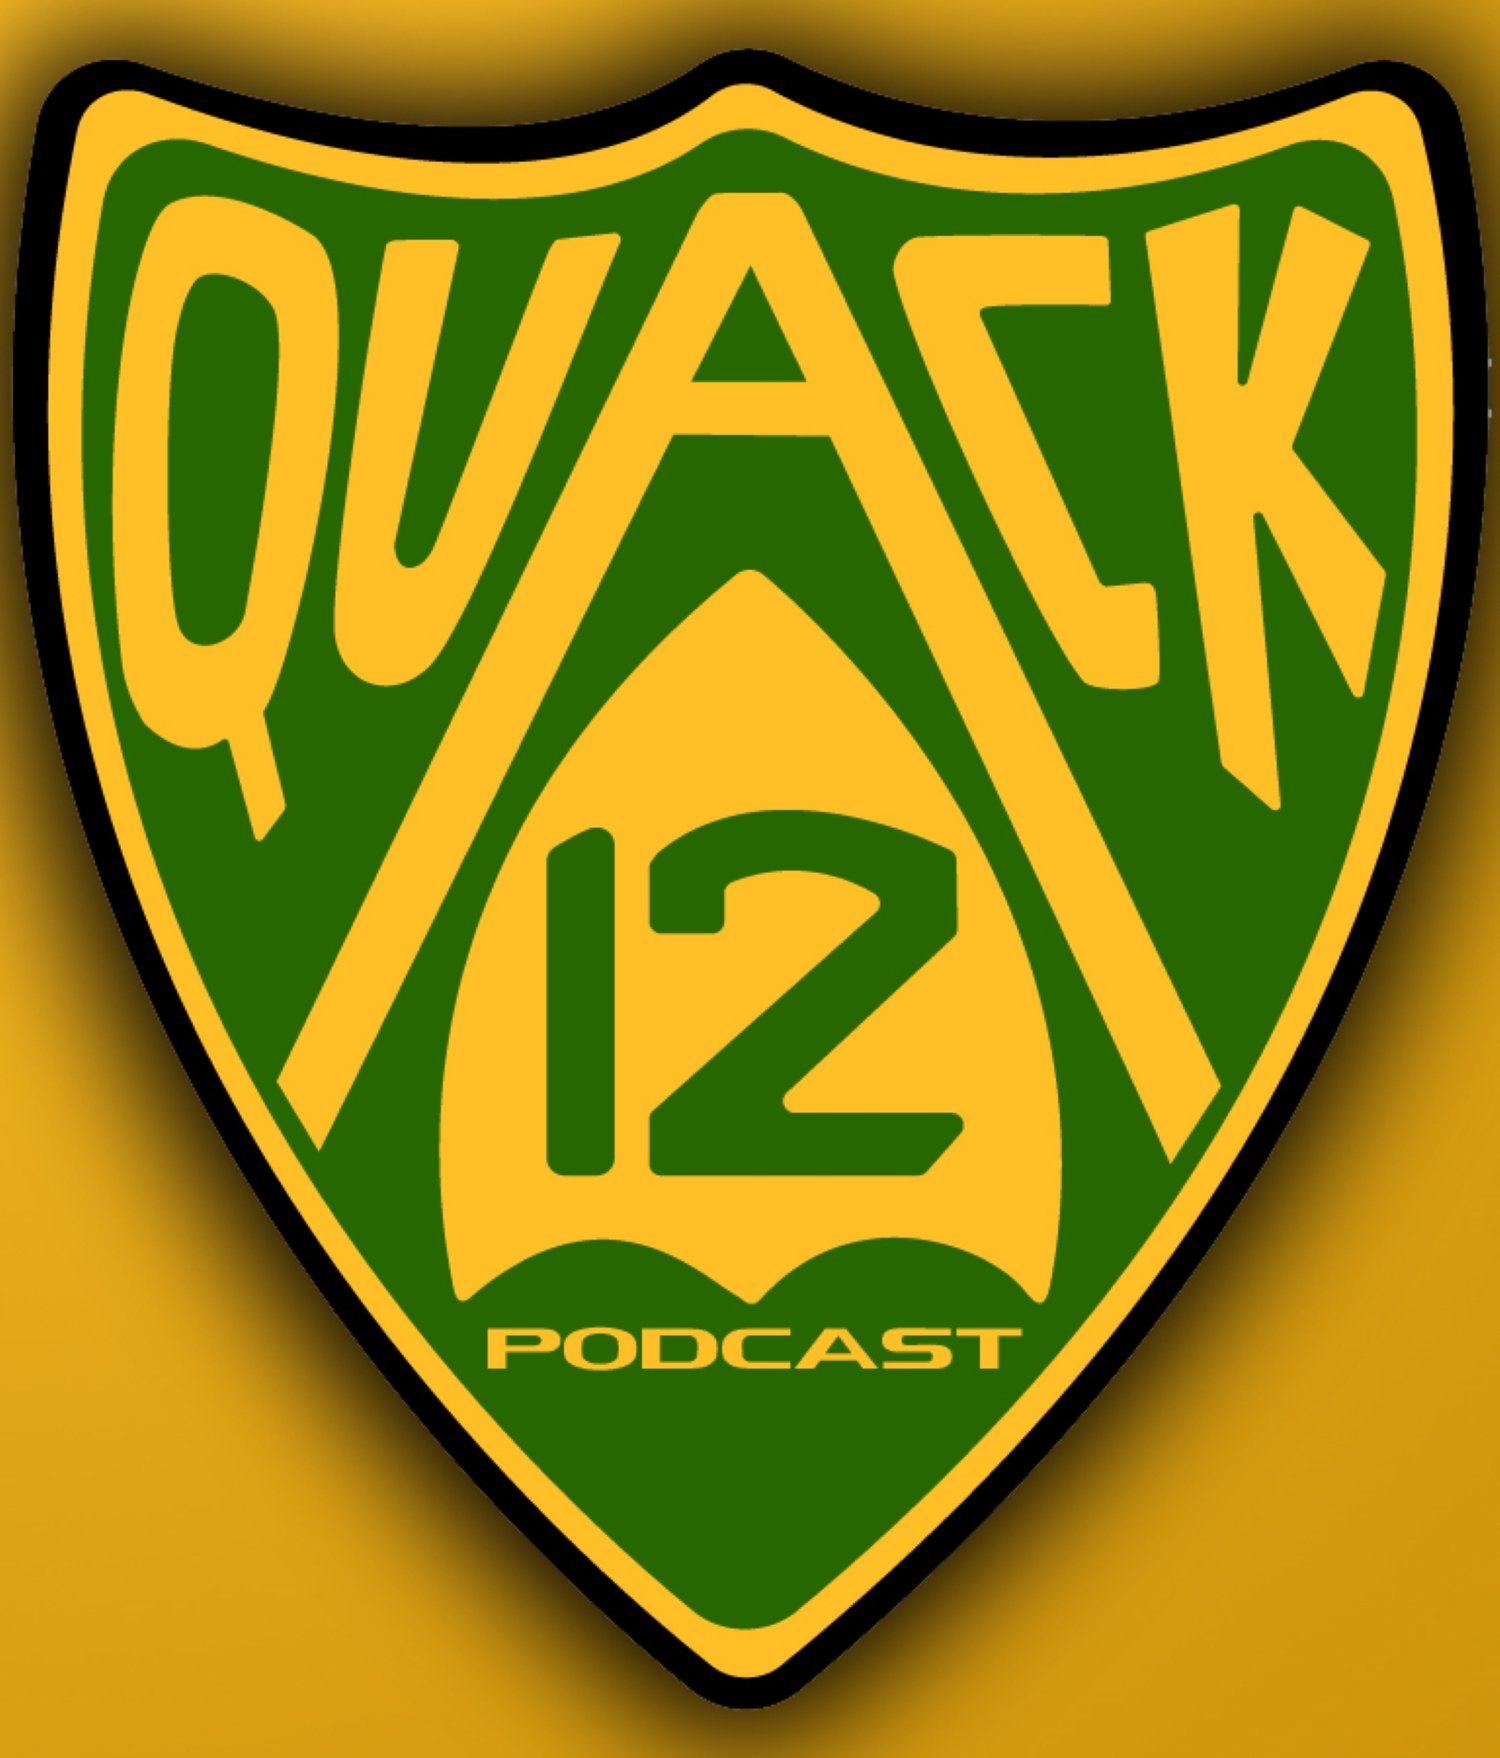 quack12podcast.com